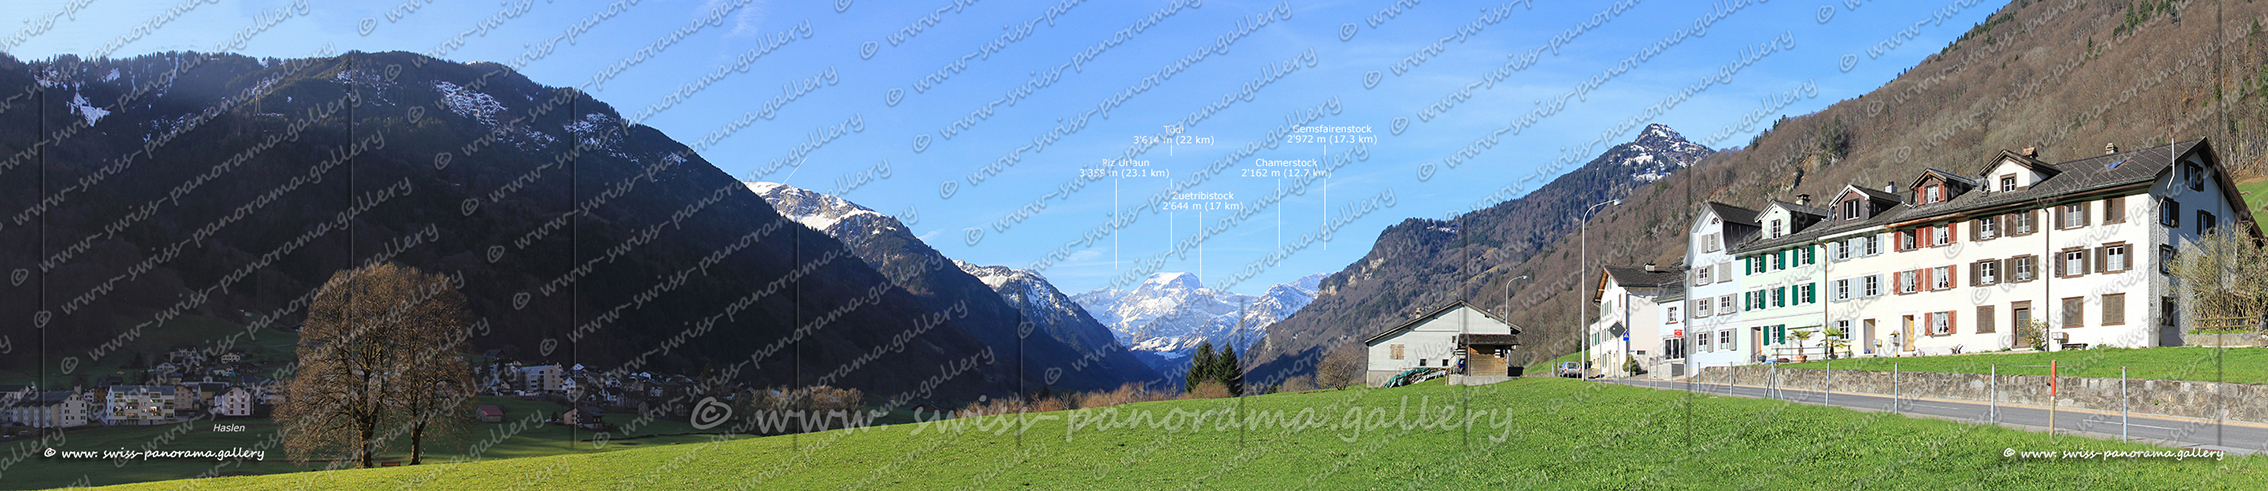 Schweizer Alpenpanorama swiss-panorama.gallery